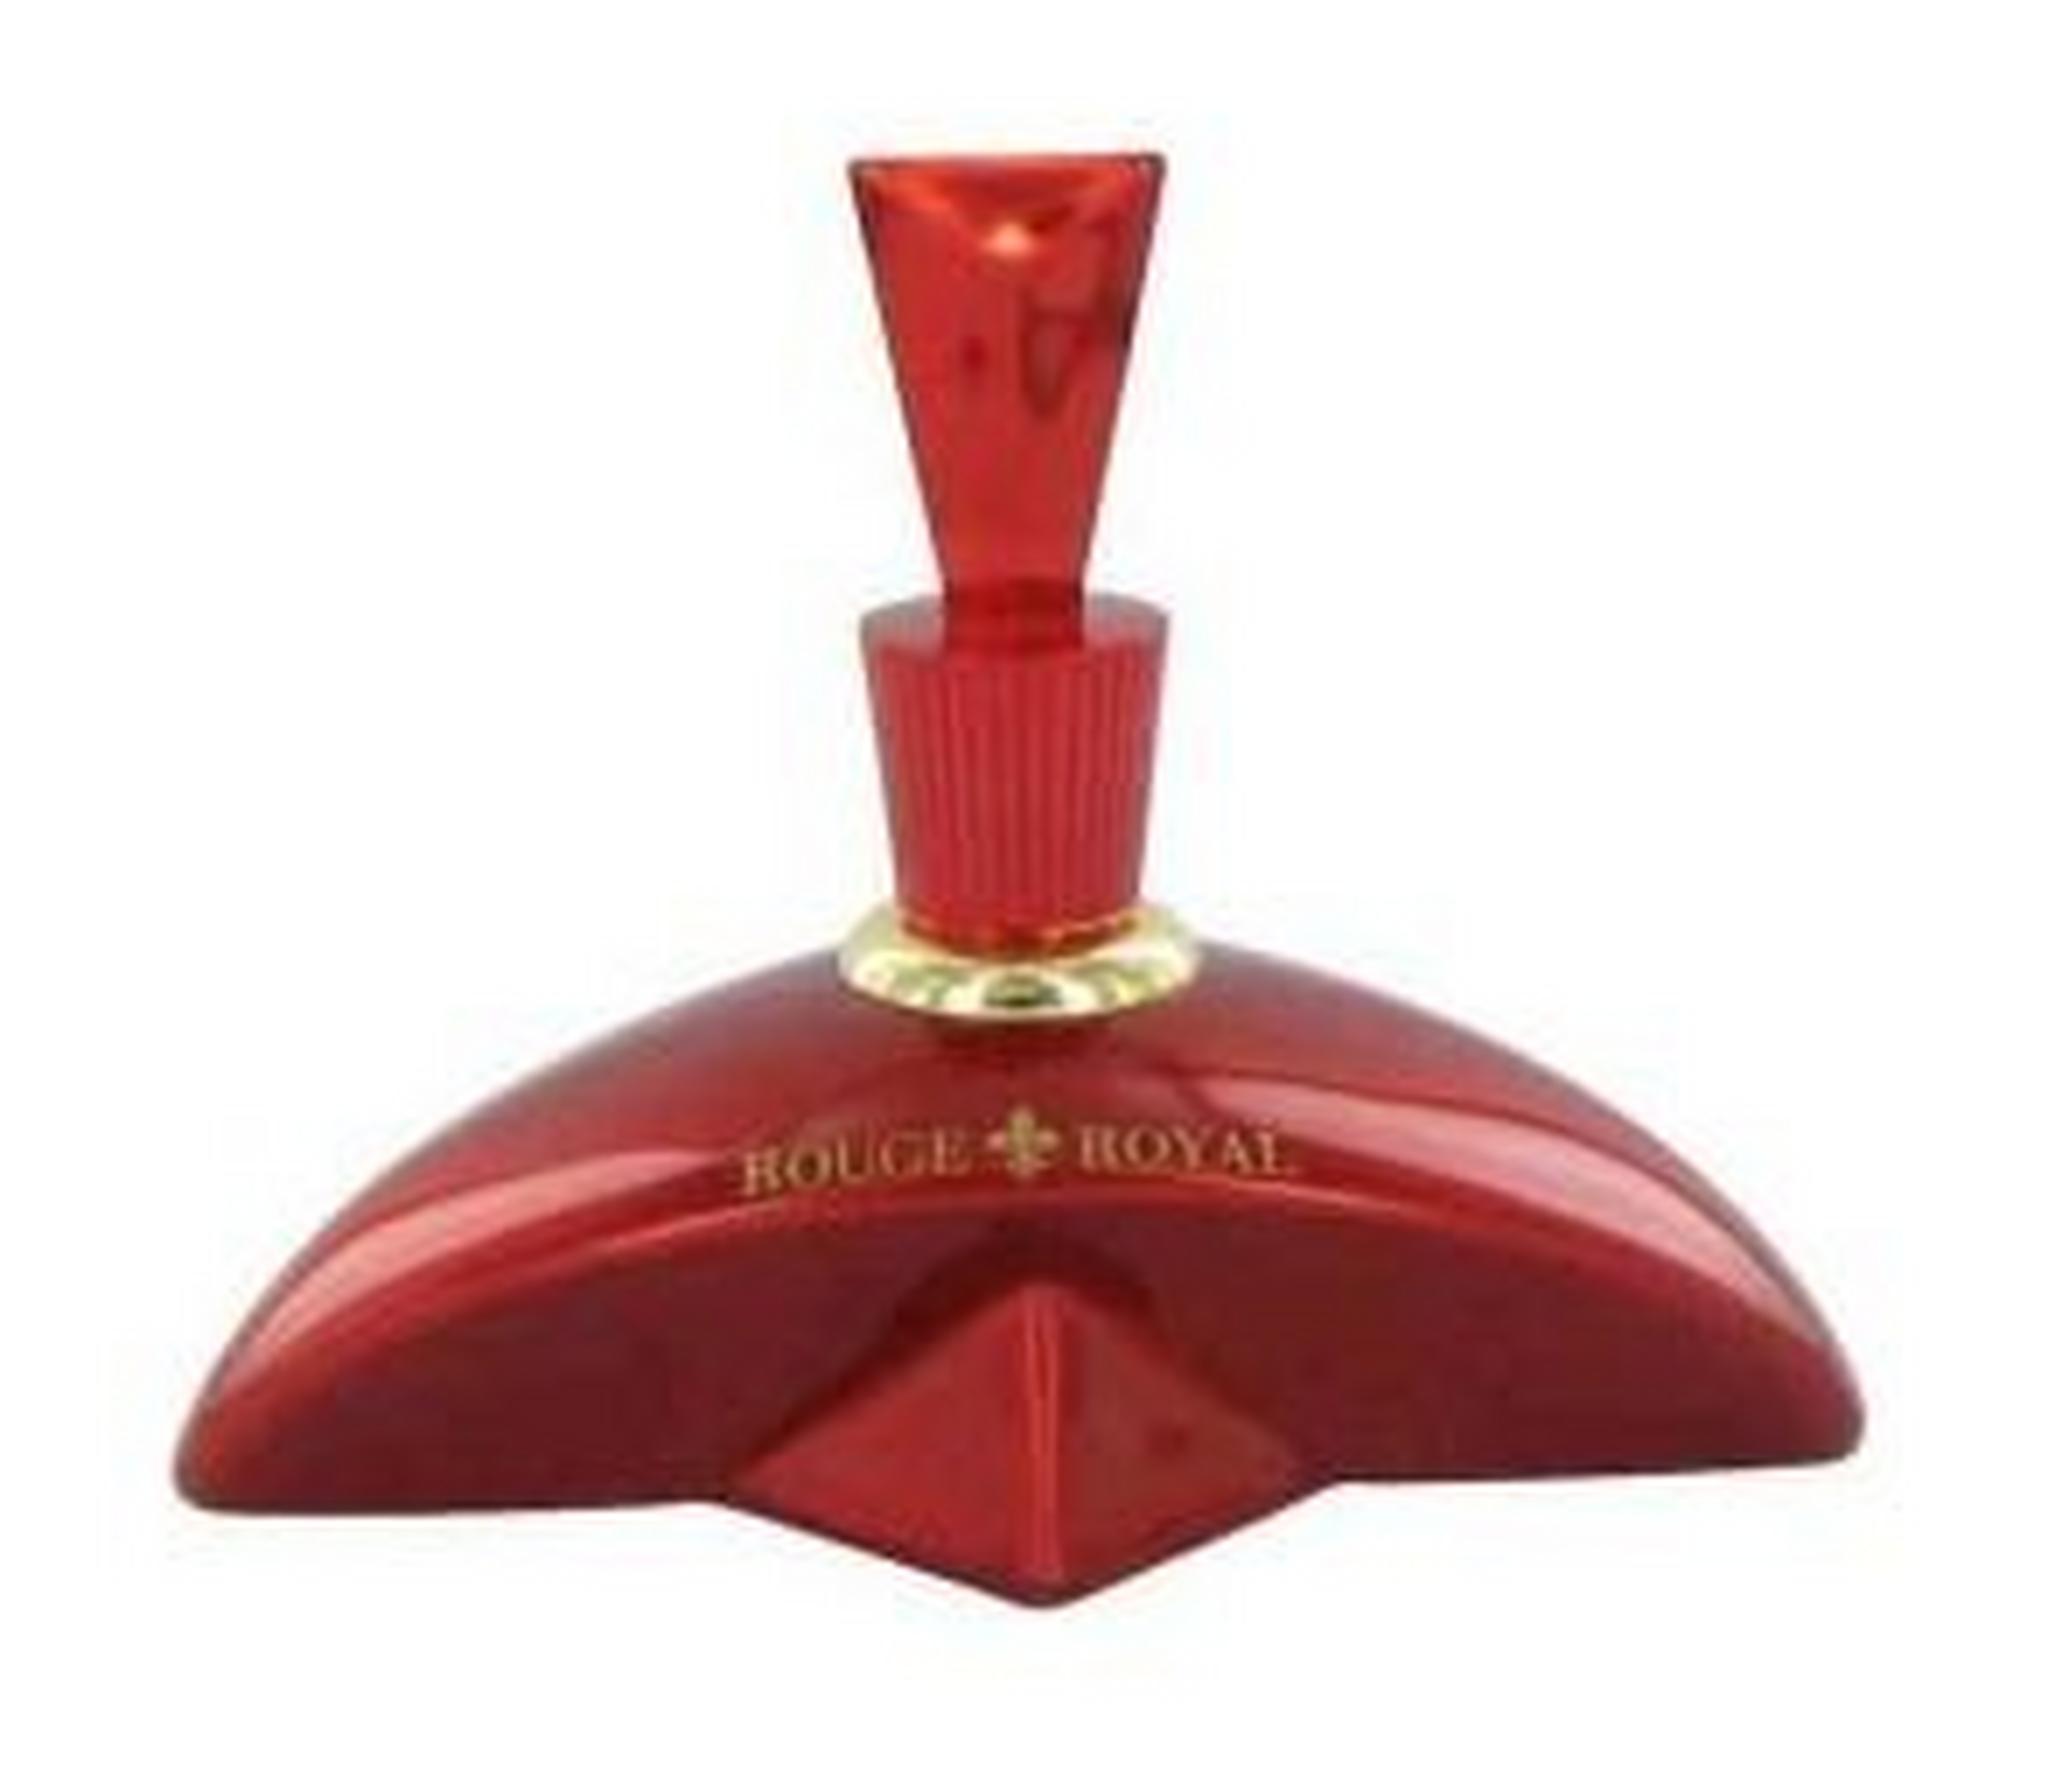 Marina De Bourbon Rouge Royal Eau de Parfum For Women 100 ml